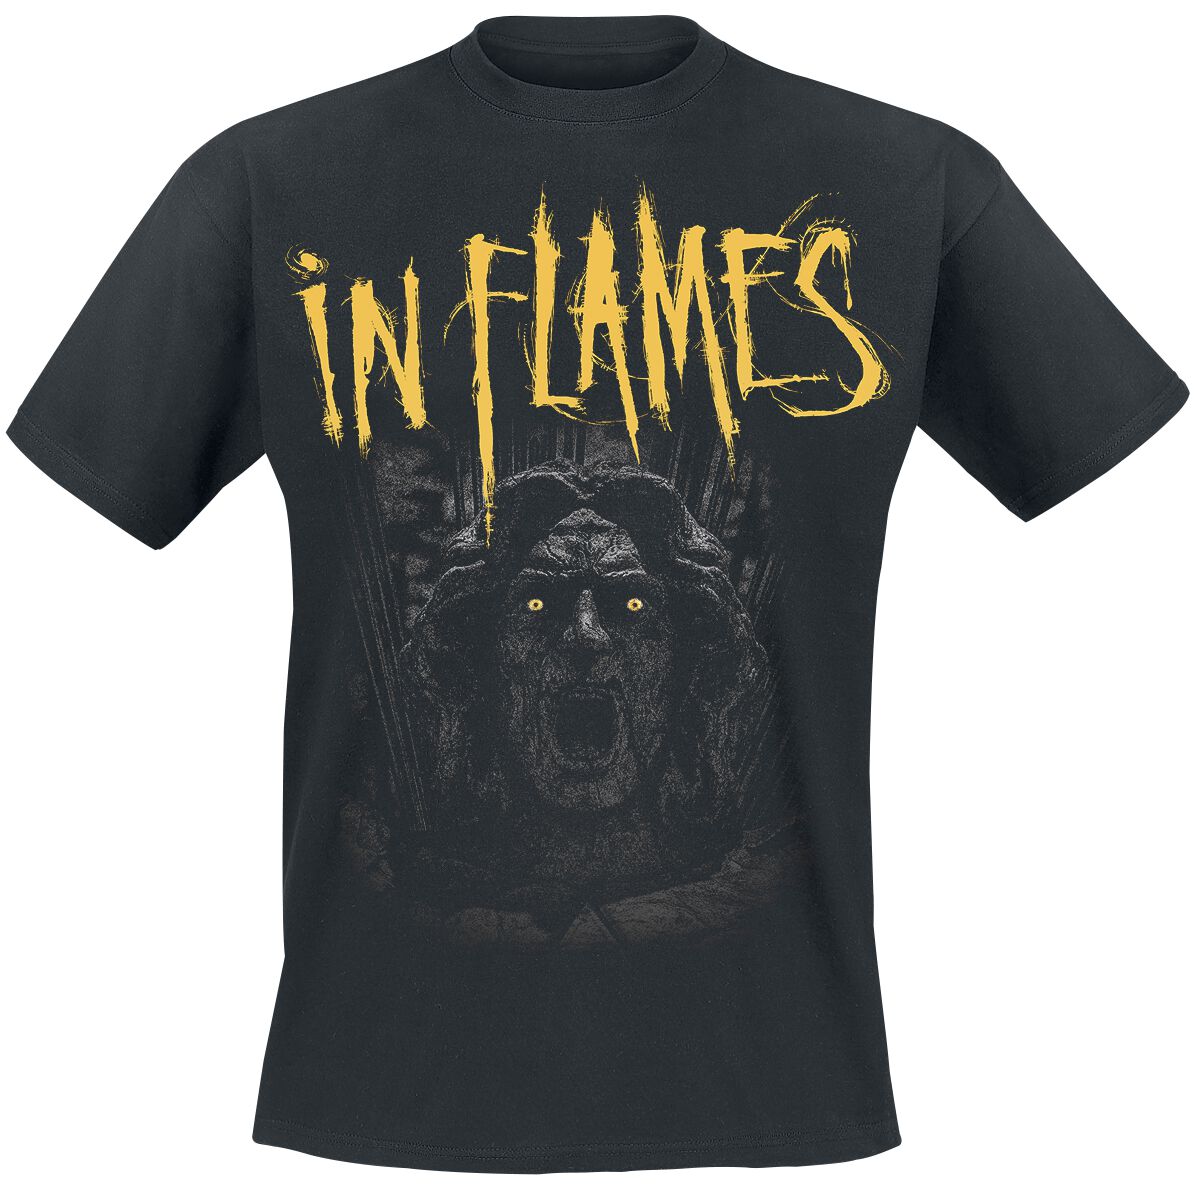 In Flames T-Shirt - Clayman We Trust - S bis XXL - für Männer - Größe XL - schwarz  - EMP exklusives Merchandise!